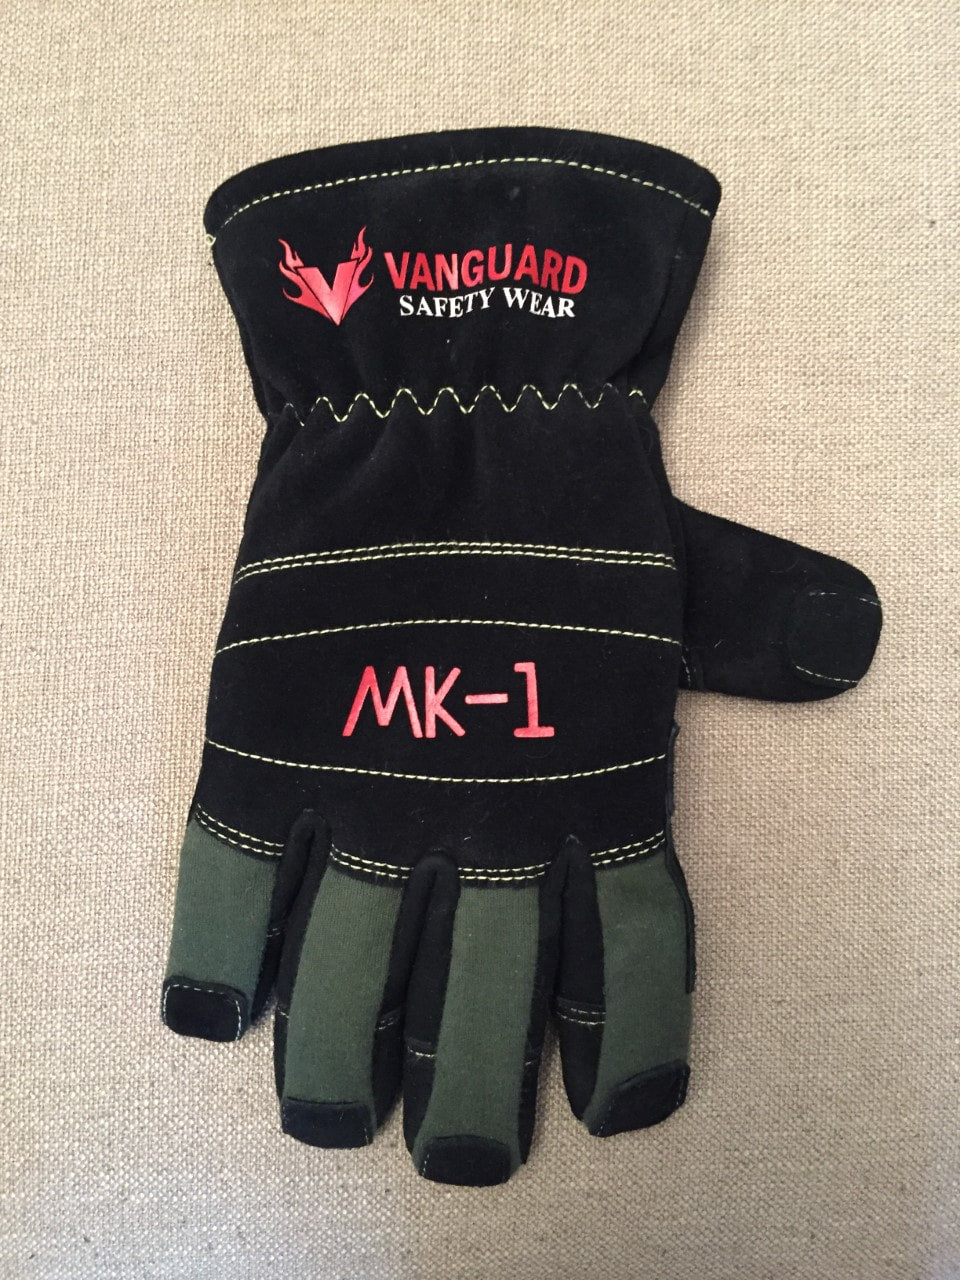 MK-1 Structural Glove - Vanguard